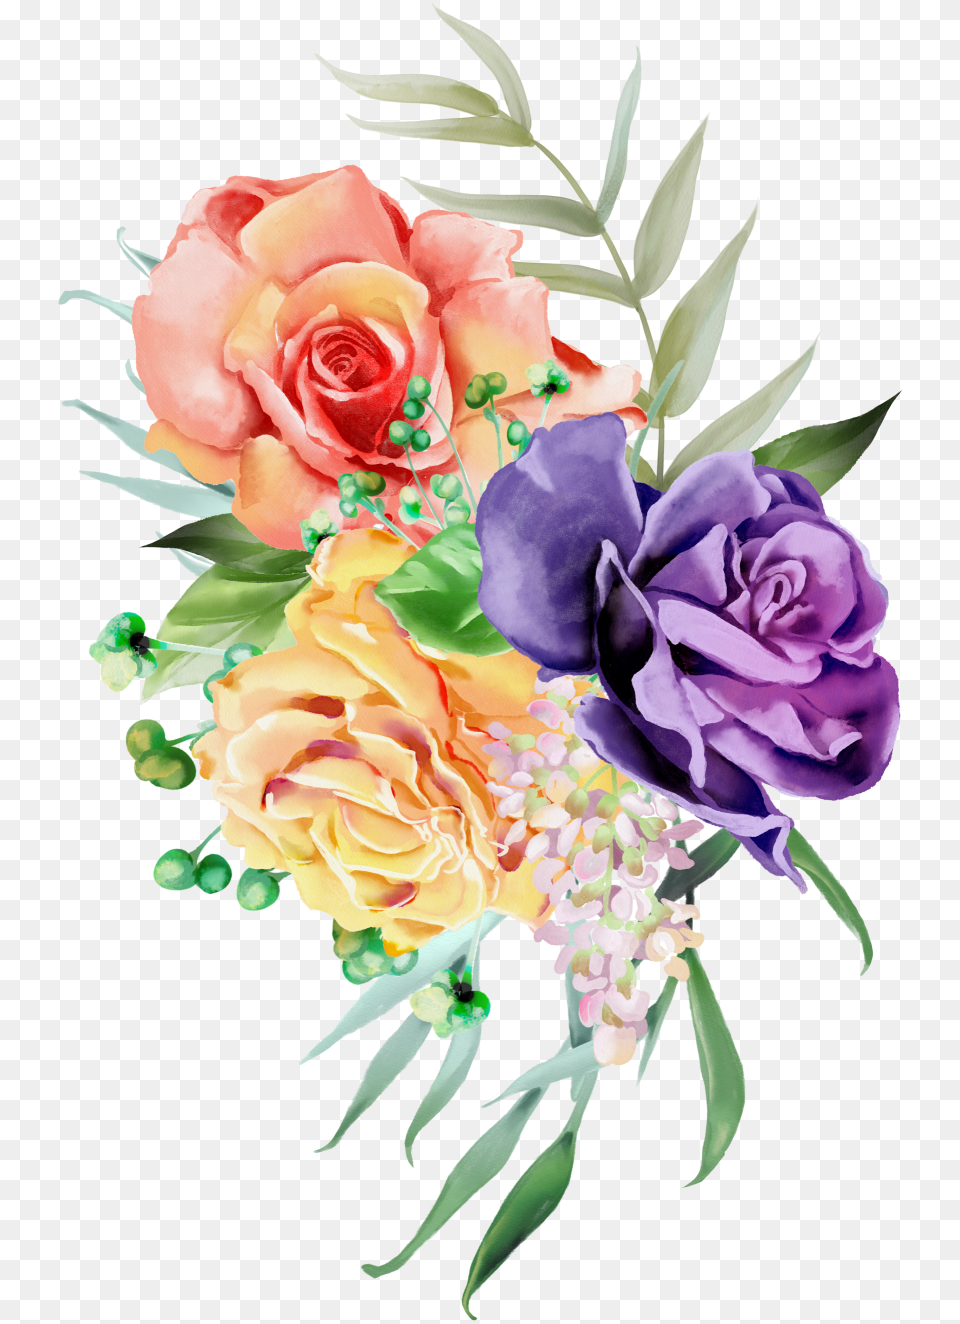 Floral Crown Floral Wreath Floral Crown Garlands Illustration, Art, Floral Design, Flower, Flower Arrangement Free Png Download